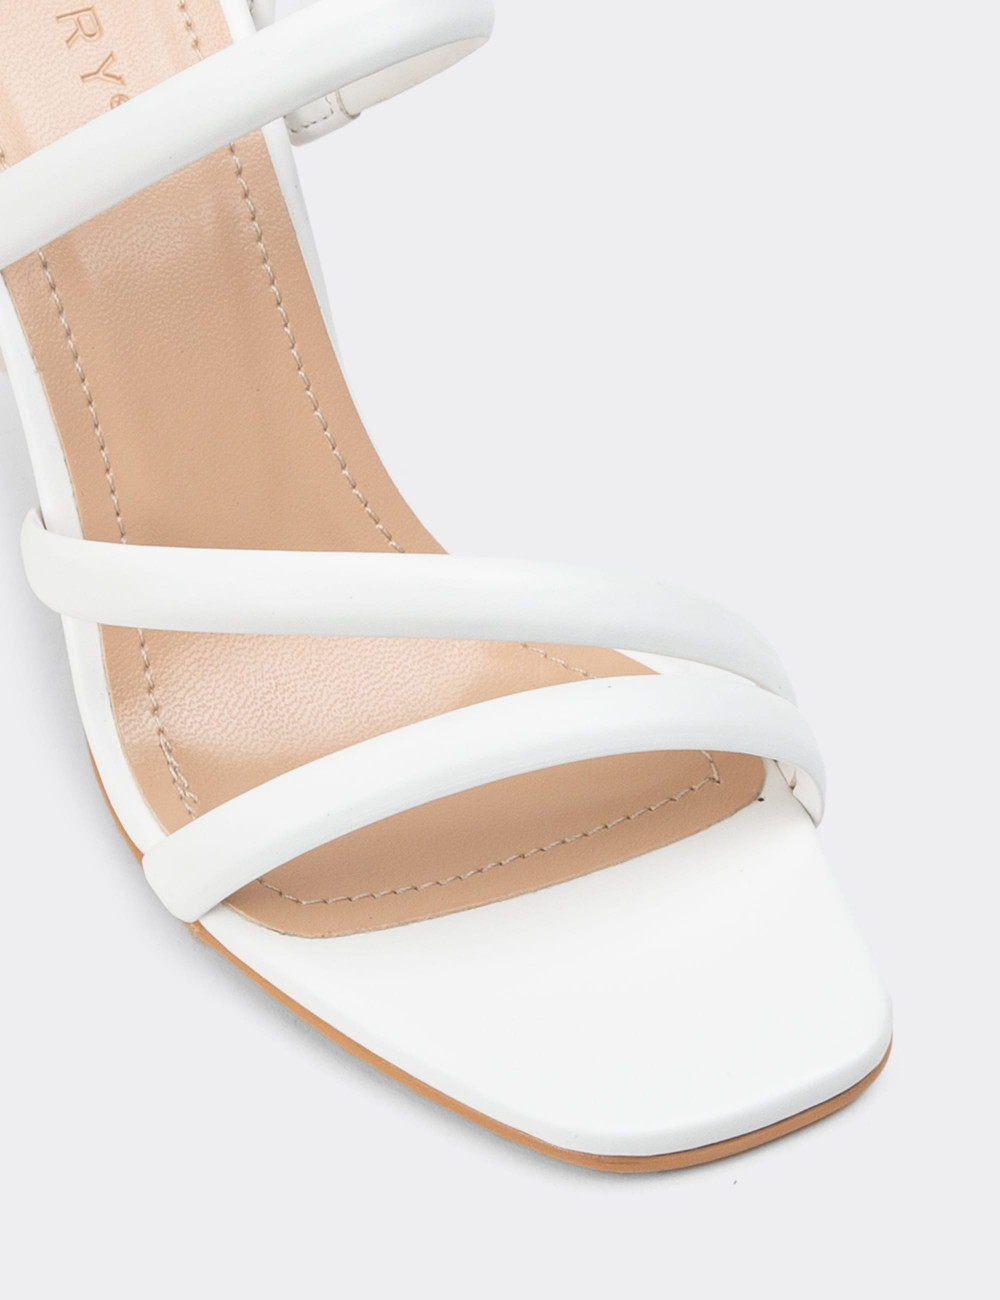 Beyaz Topuklu Kadın Ayakkabı - N2222ZBYZM01